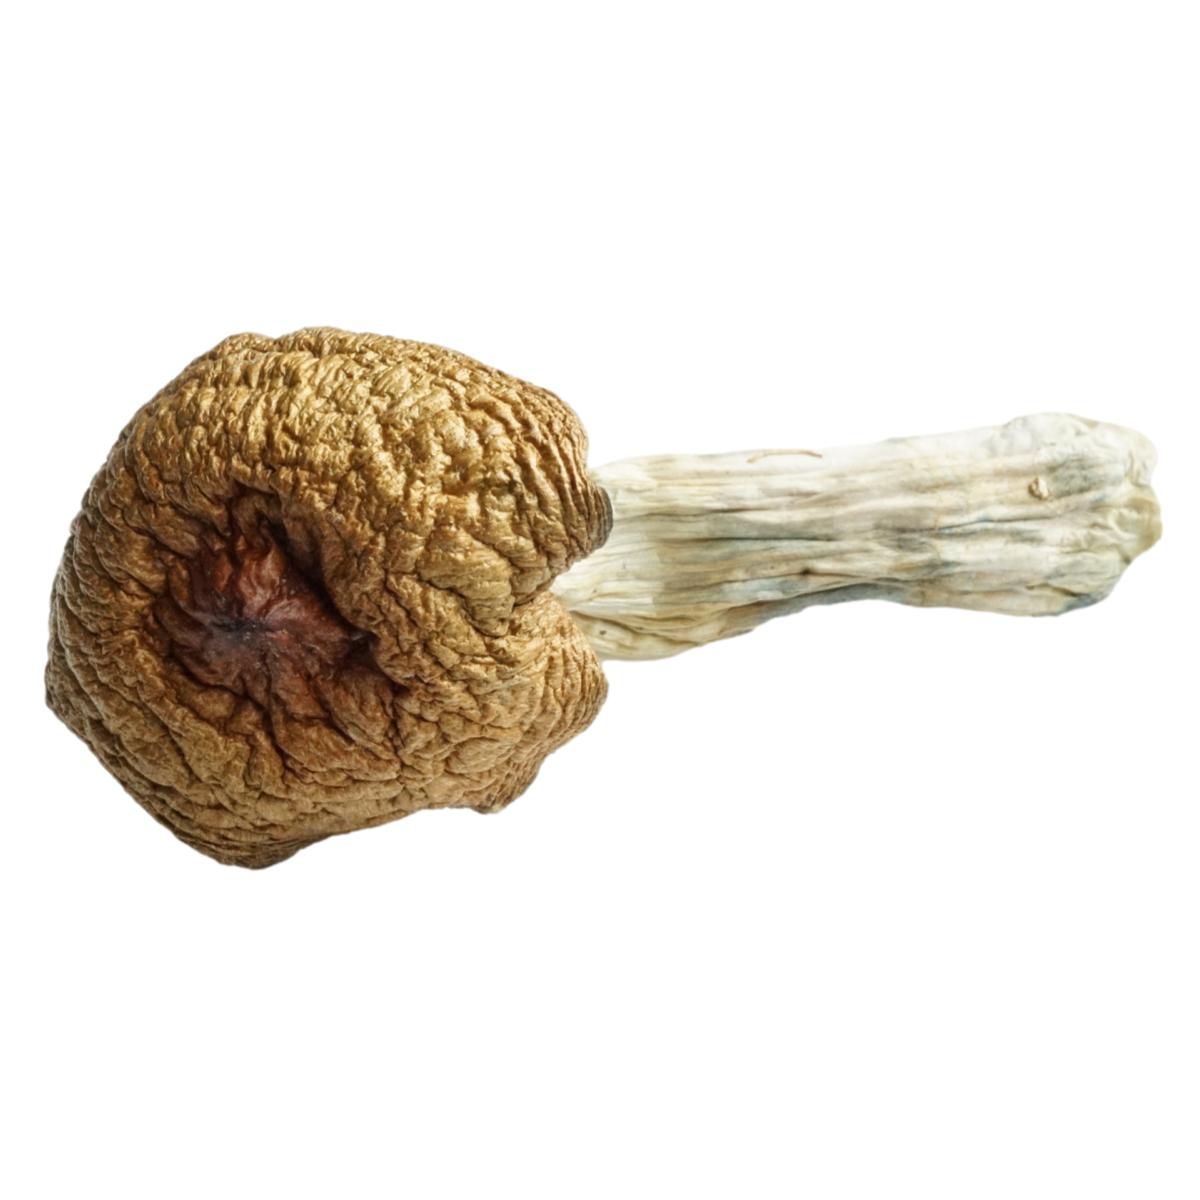 Huautla Magic Mushrooms 1